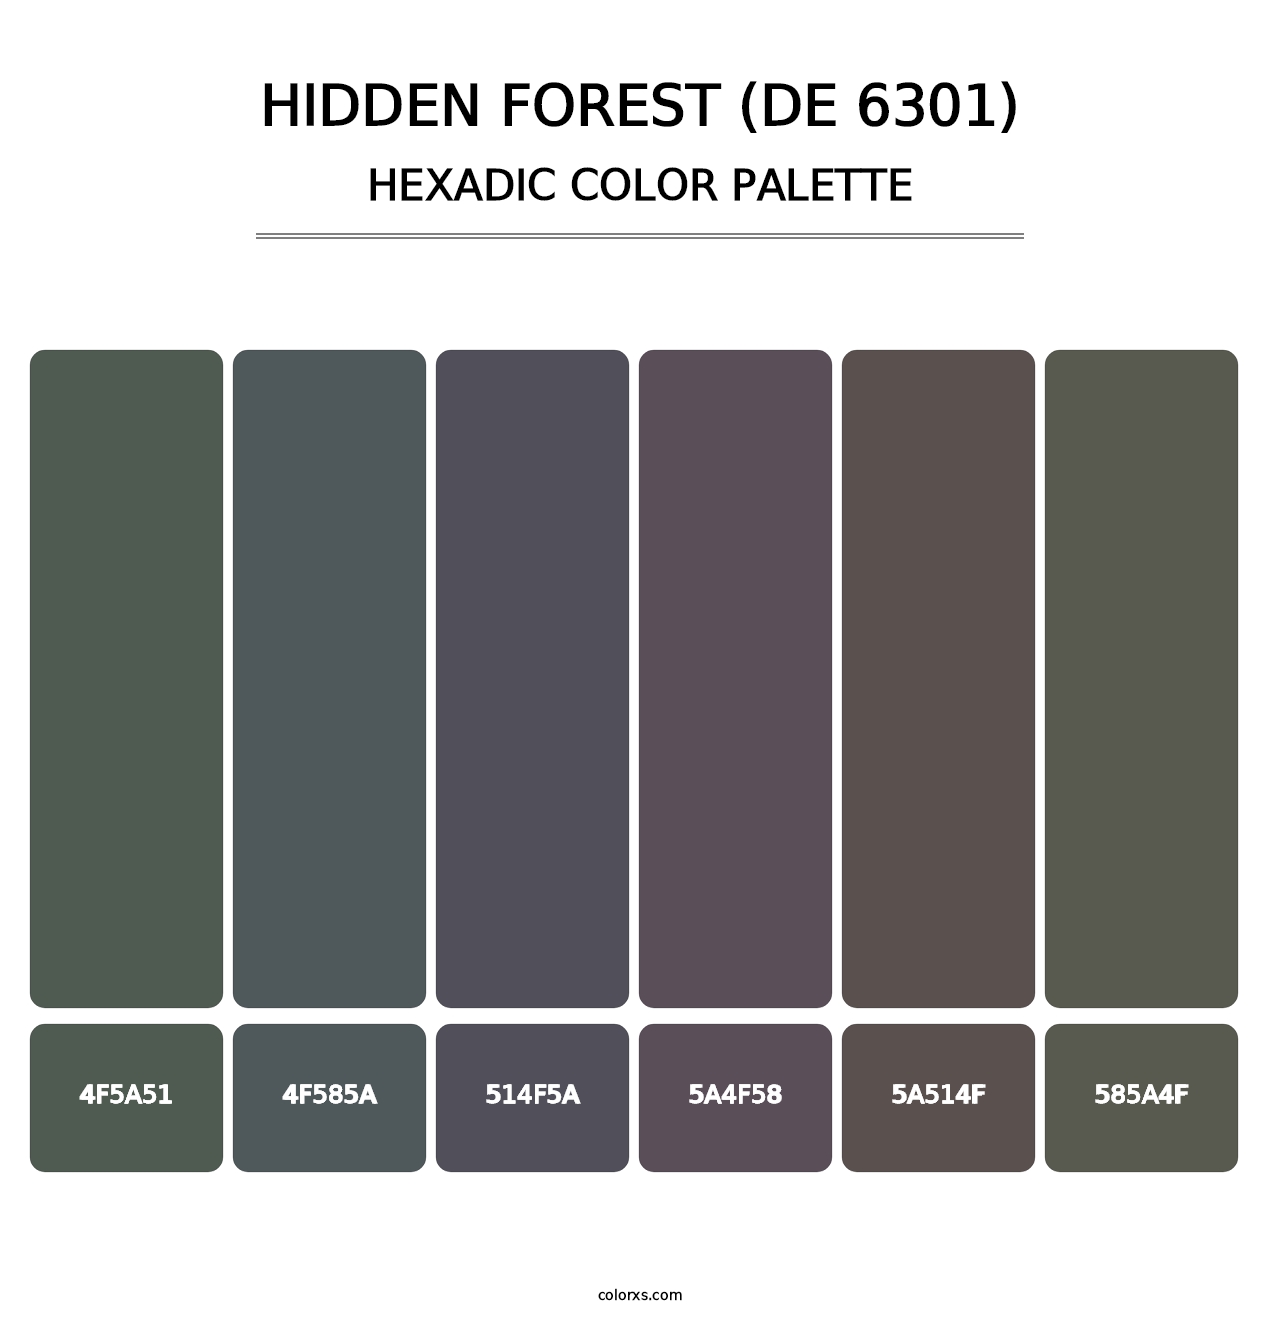 Hidden Forest (DE 6301) - Hexadic Color Palette